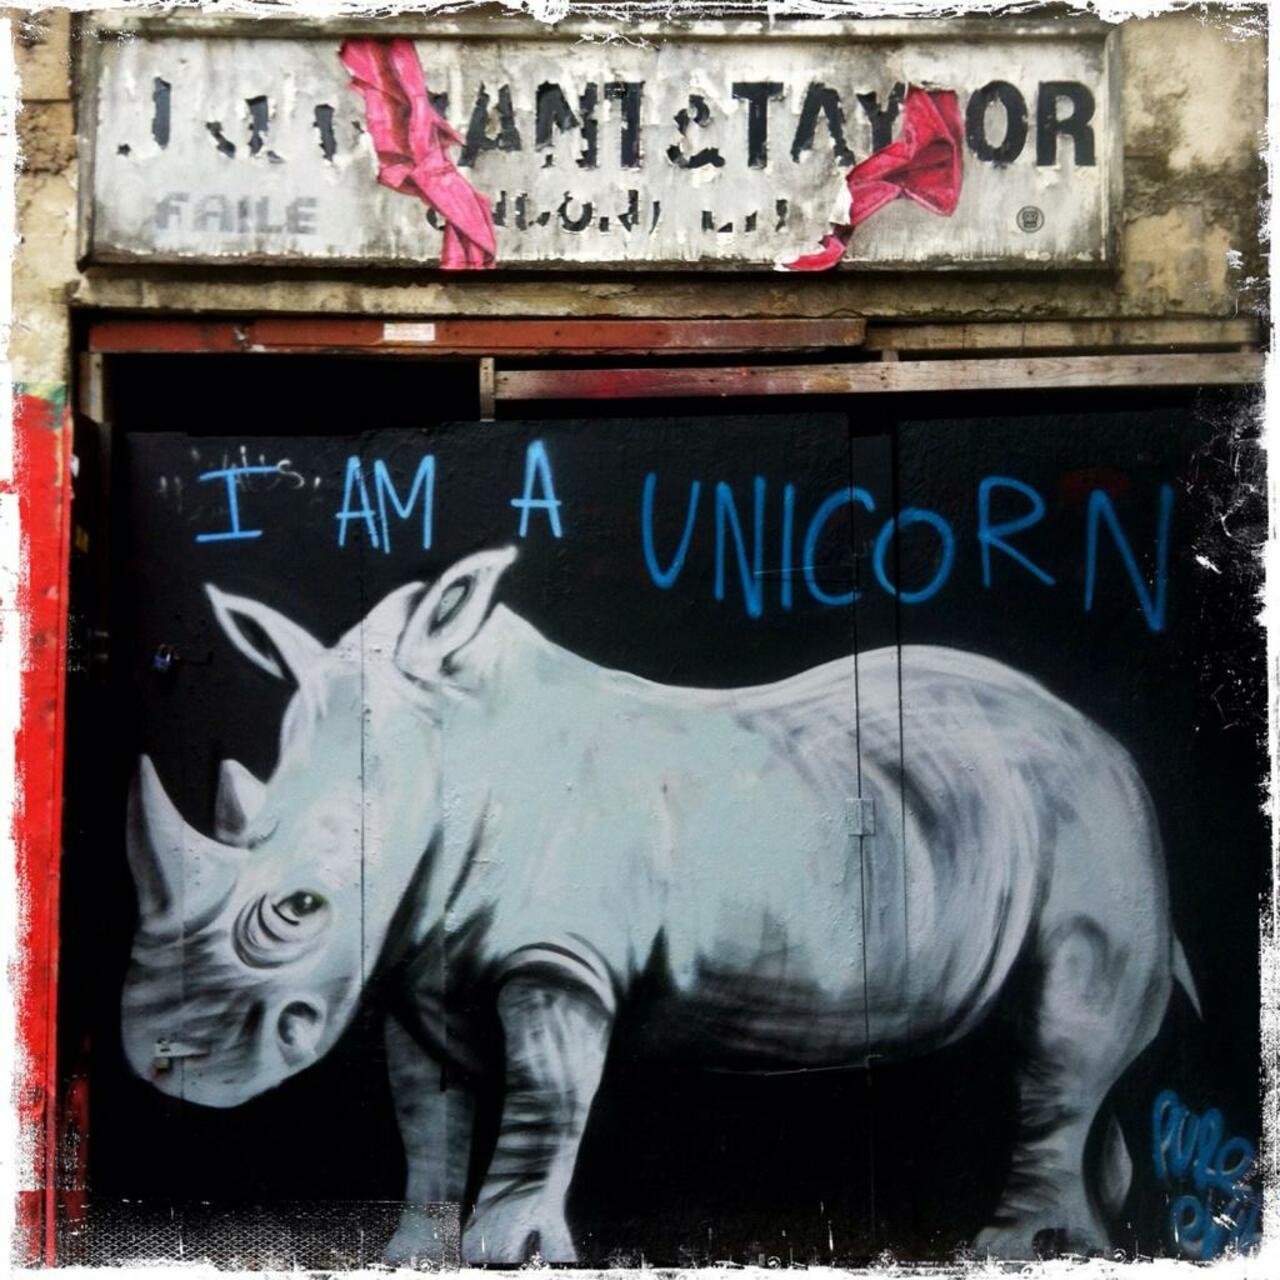 A blast from the past No.4

I am a unicorn from Ravey Street #art #graffiti #streetart @PUREGRAFFITI @globalgraff http://t.co/qL4JkIE96S